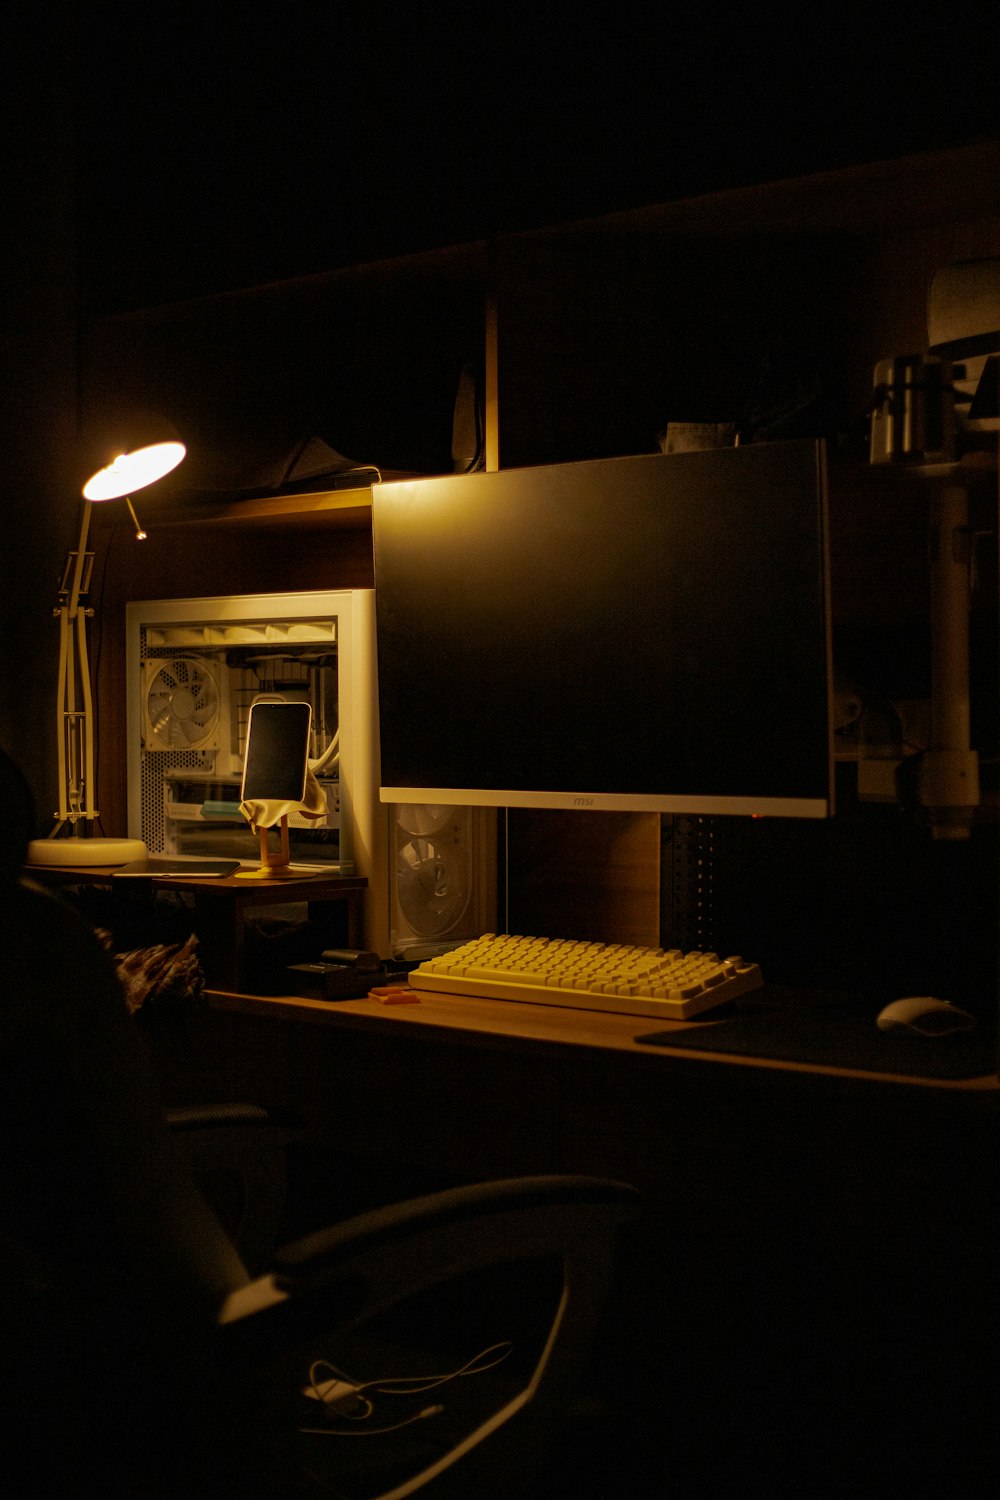 暗い部屋にモニターとキーボードを備えたコンピューターデスク